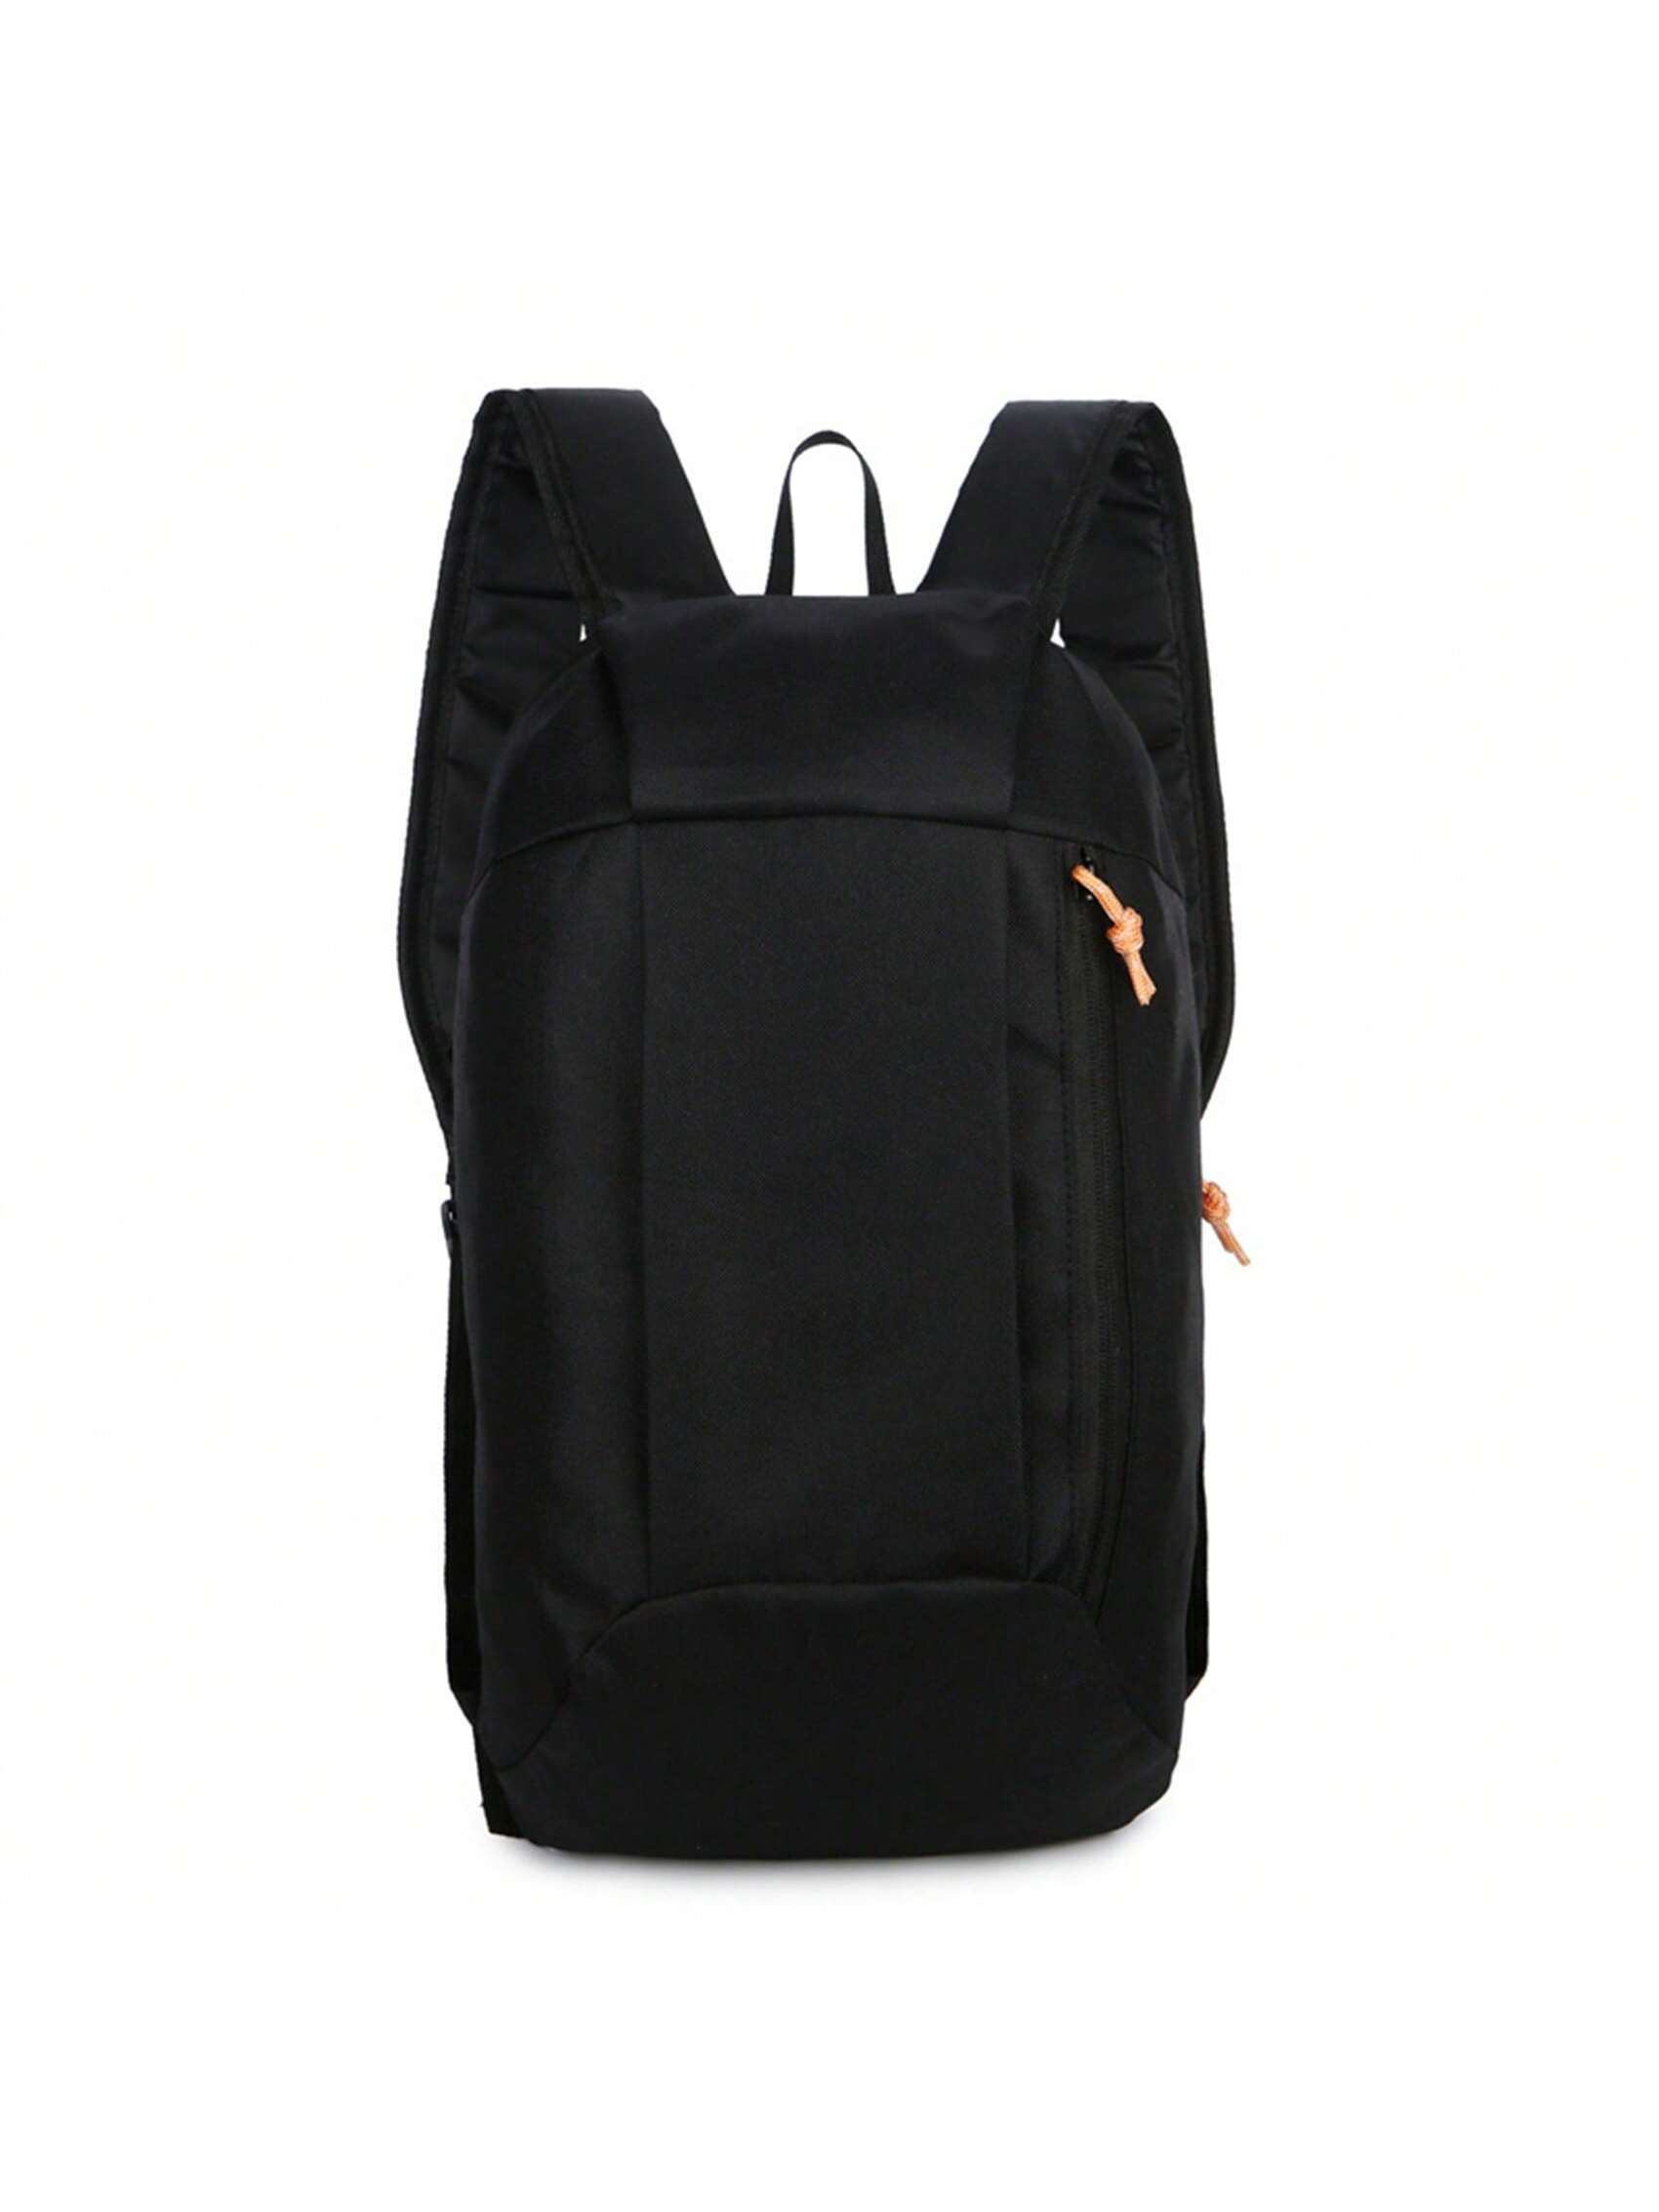 Рюкзак для велоспорта на открытом воздухе с двойными лямками, черный мужской рюкзак с двумя плечами черный